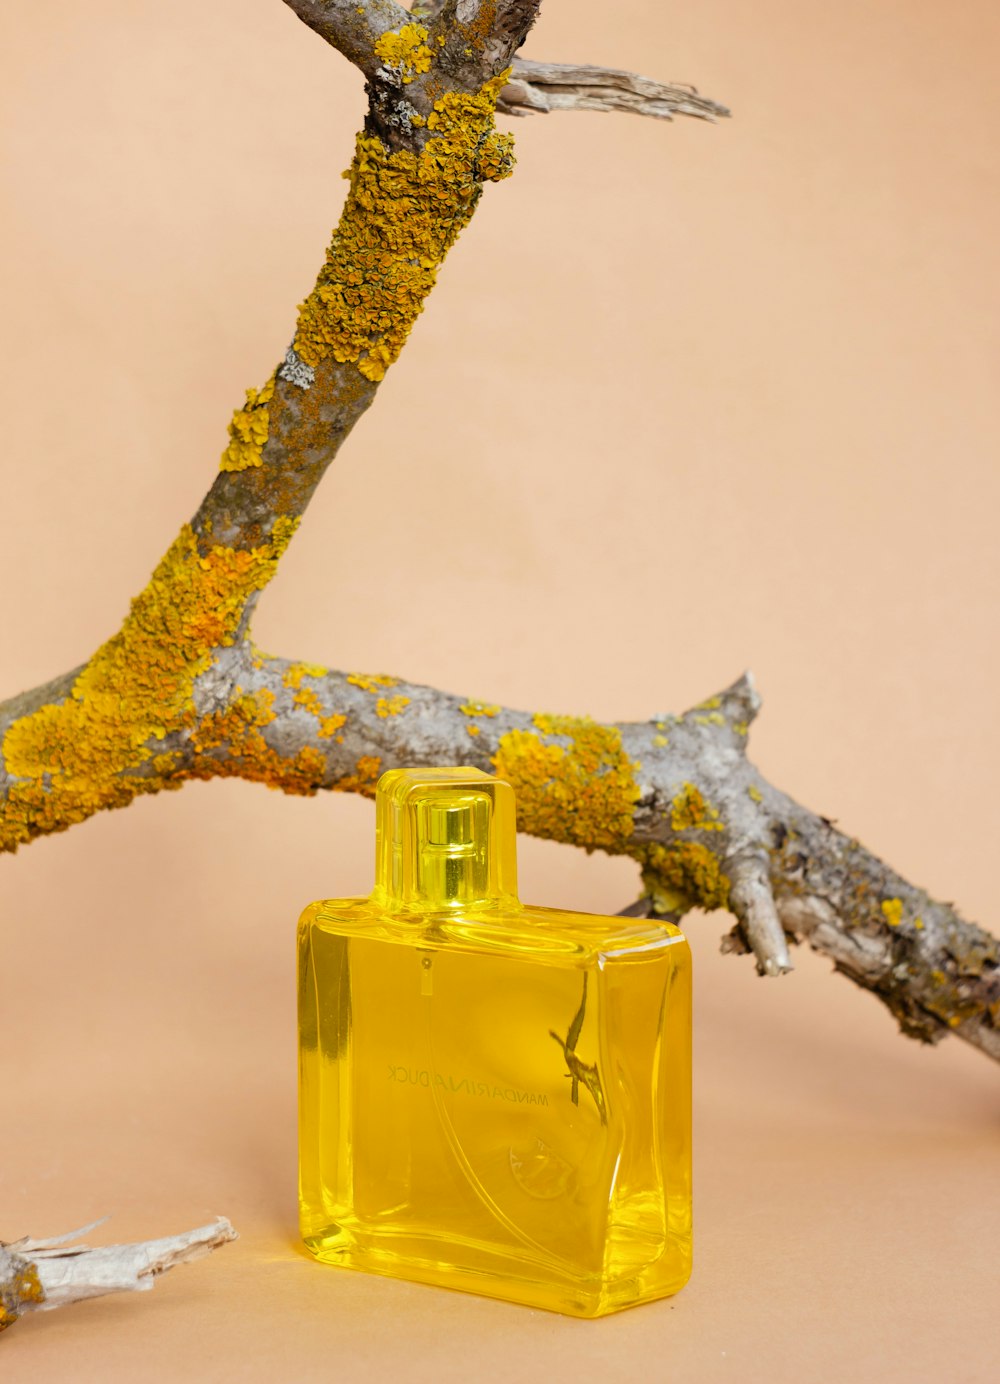 Un frasco de perfume en lo alto de la rama de un árbol